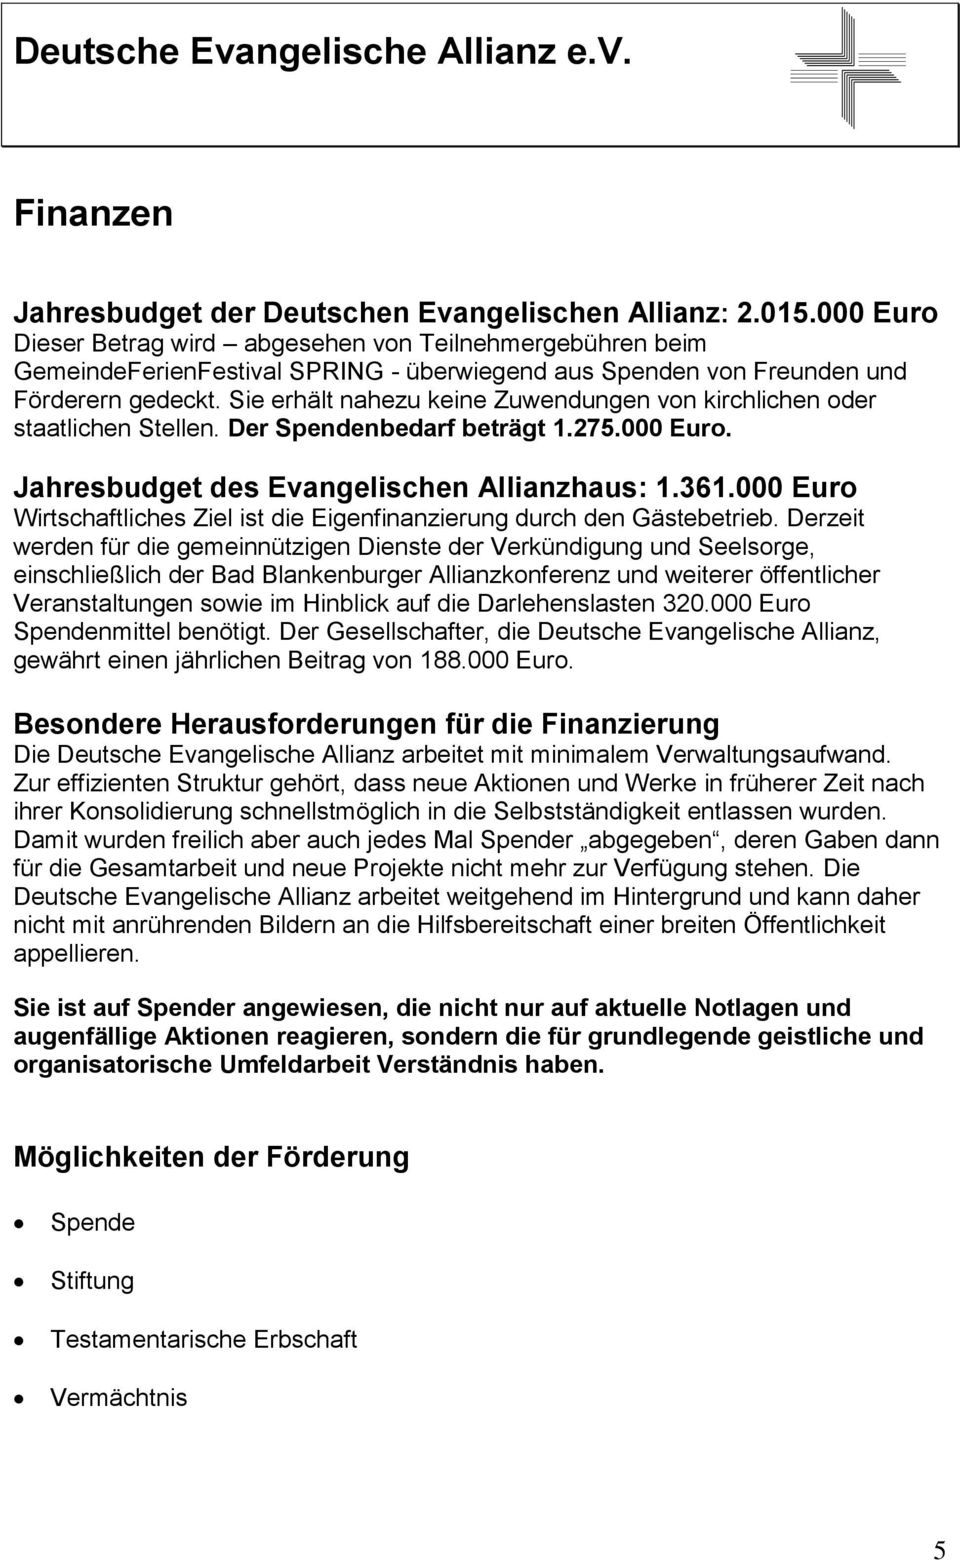 Sie erhält nahezu keine Zuwendungen von kirchlichen oder staatlichen Stellen. Der Spendenbedarf beträgt 1.275.000 Euro. Jahresbudget des Evangelischen Allianzhaus: 1.361.